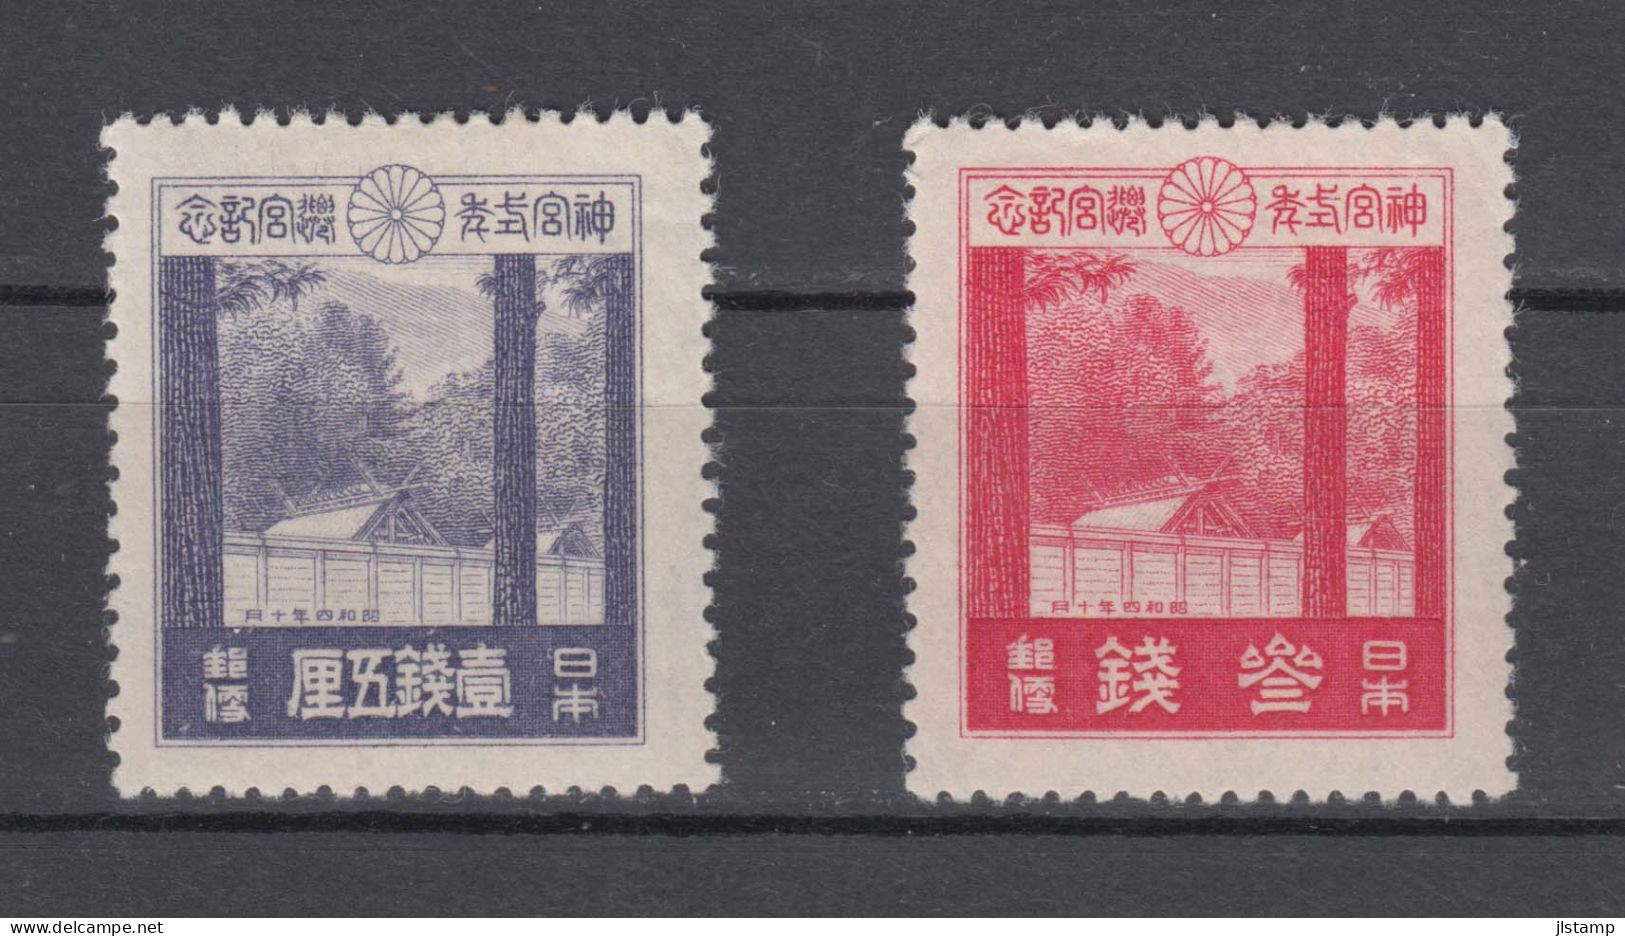 Japan 1929 Ise Shrines Stamps Set Of 2 ,Scott# 206-207,OG MH,VF - Unused Stamps